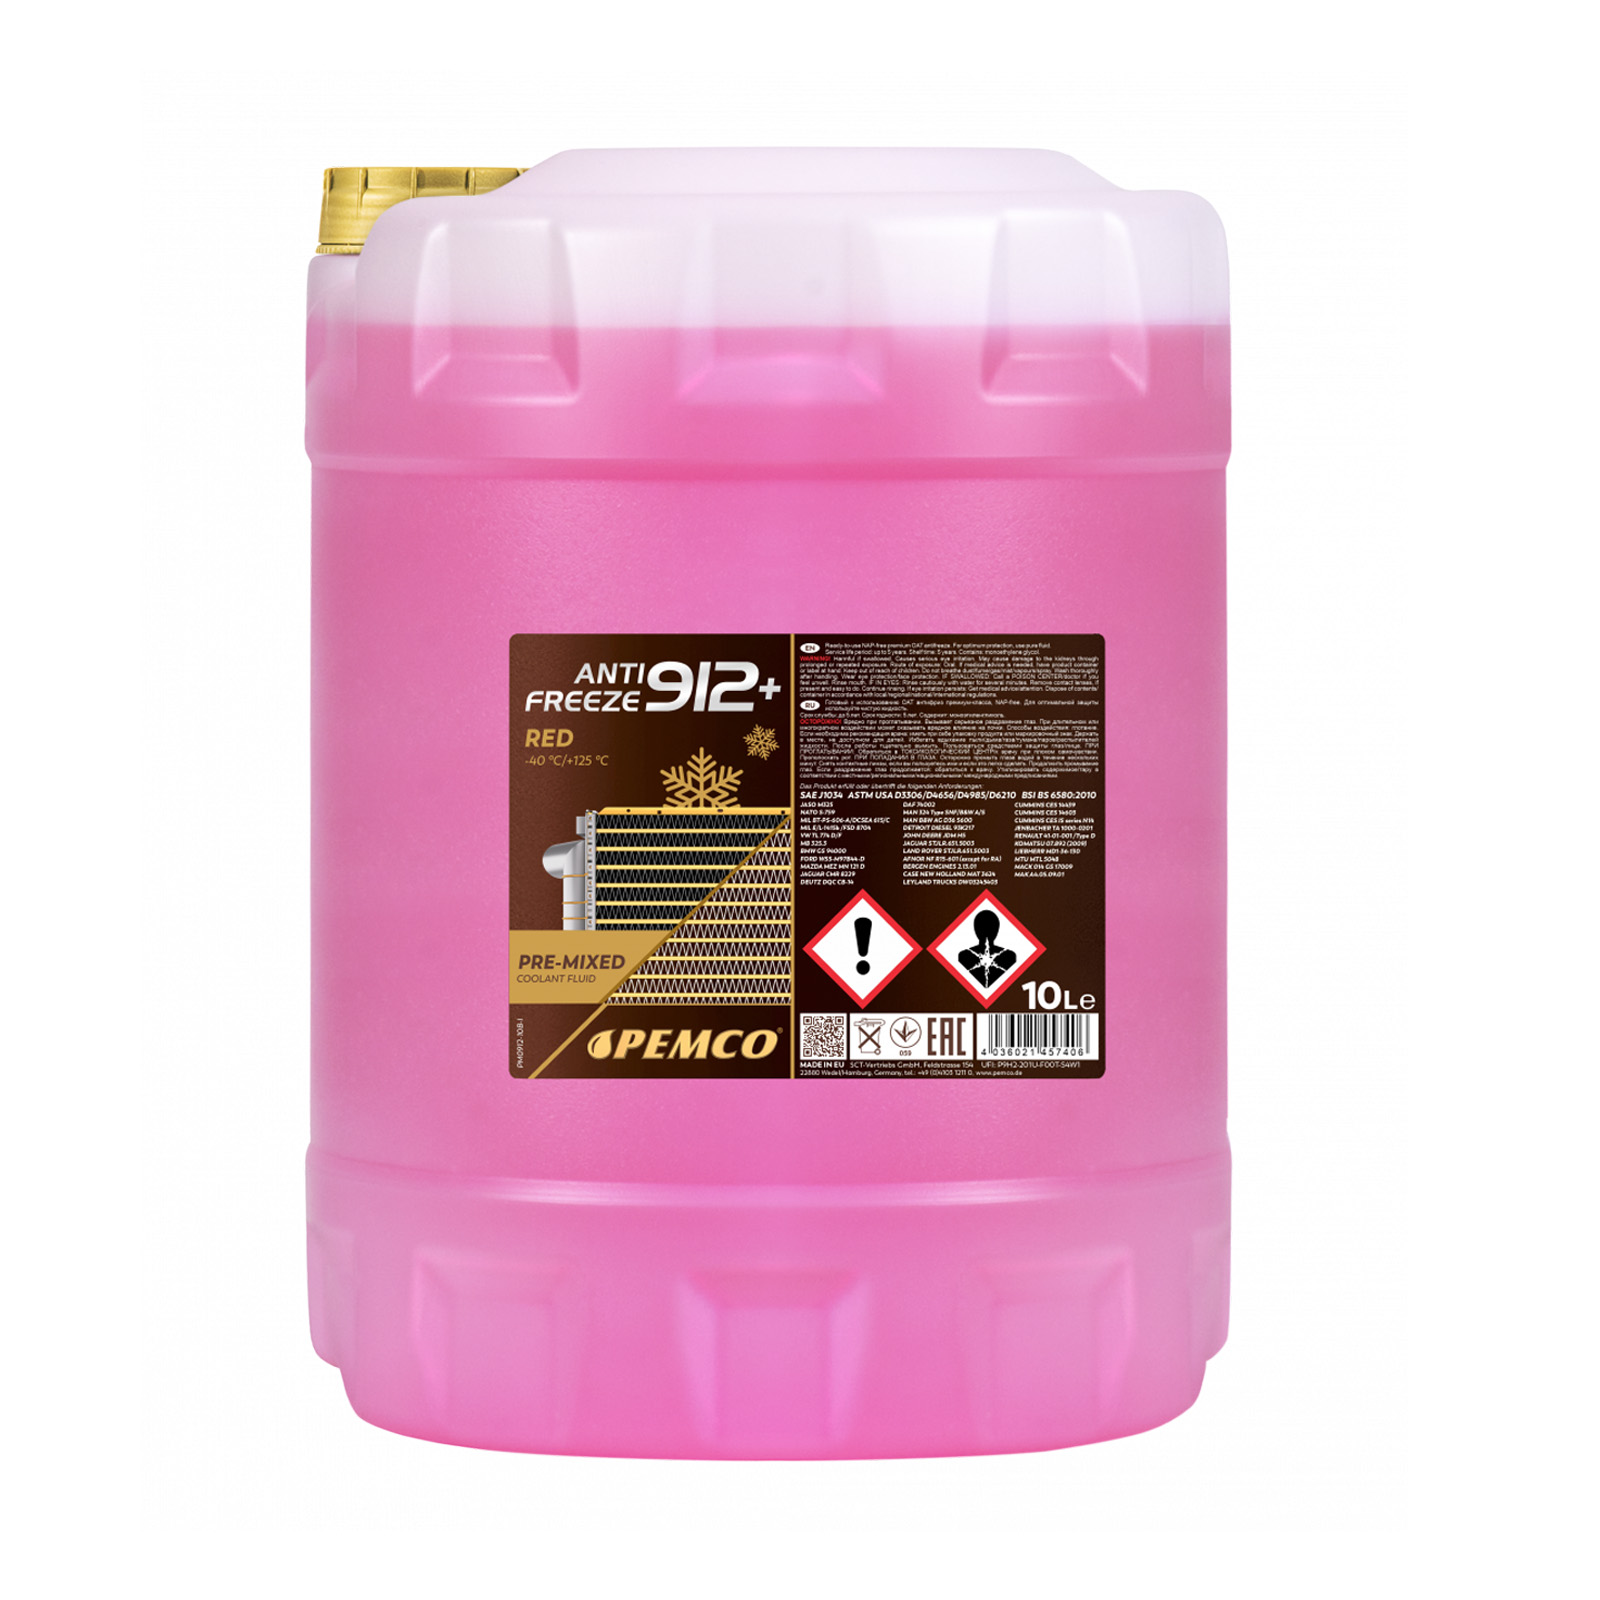 30 Liter PEMCO Anti Freeze 912+ Kühler Frostschutz bis -40C rosa rot violett